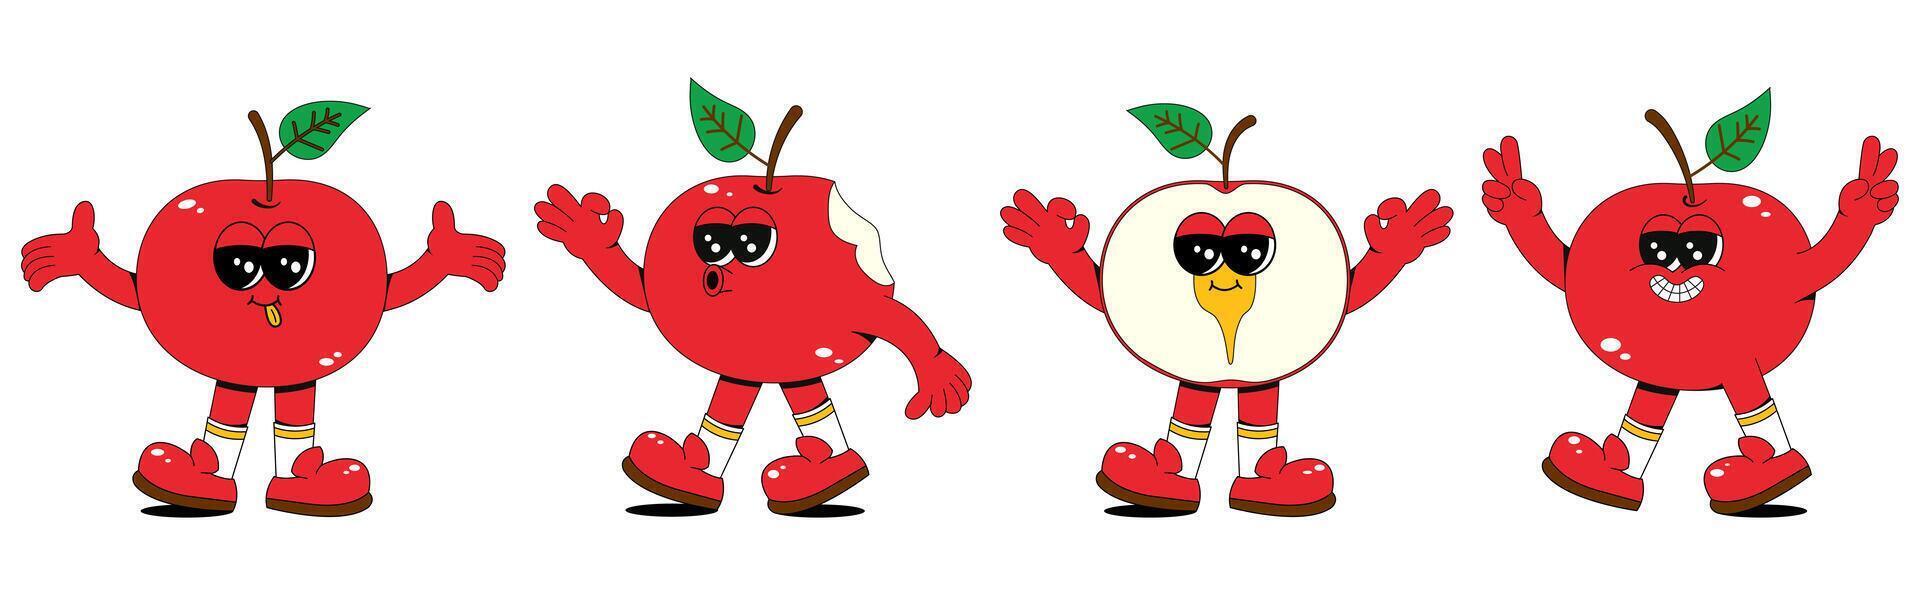 einstellen von retro Karikatur Apfel Obst Figuren. ein modern Illustration mit süß Apfel Maskottchen im anders posiert und Emotionen, Erstellen ein 70er Jahre Comic Buch Stimmung. vektor